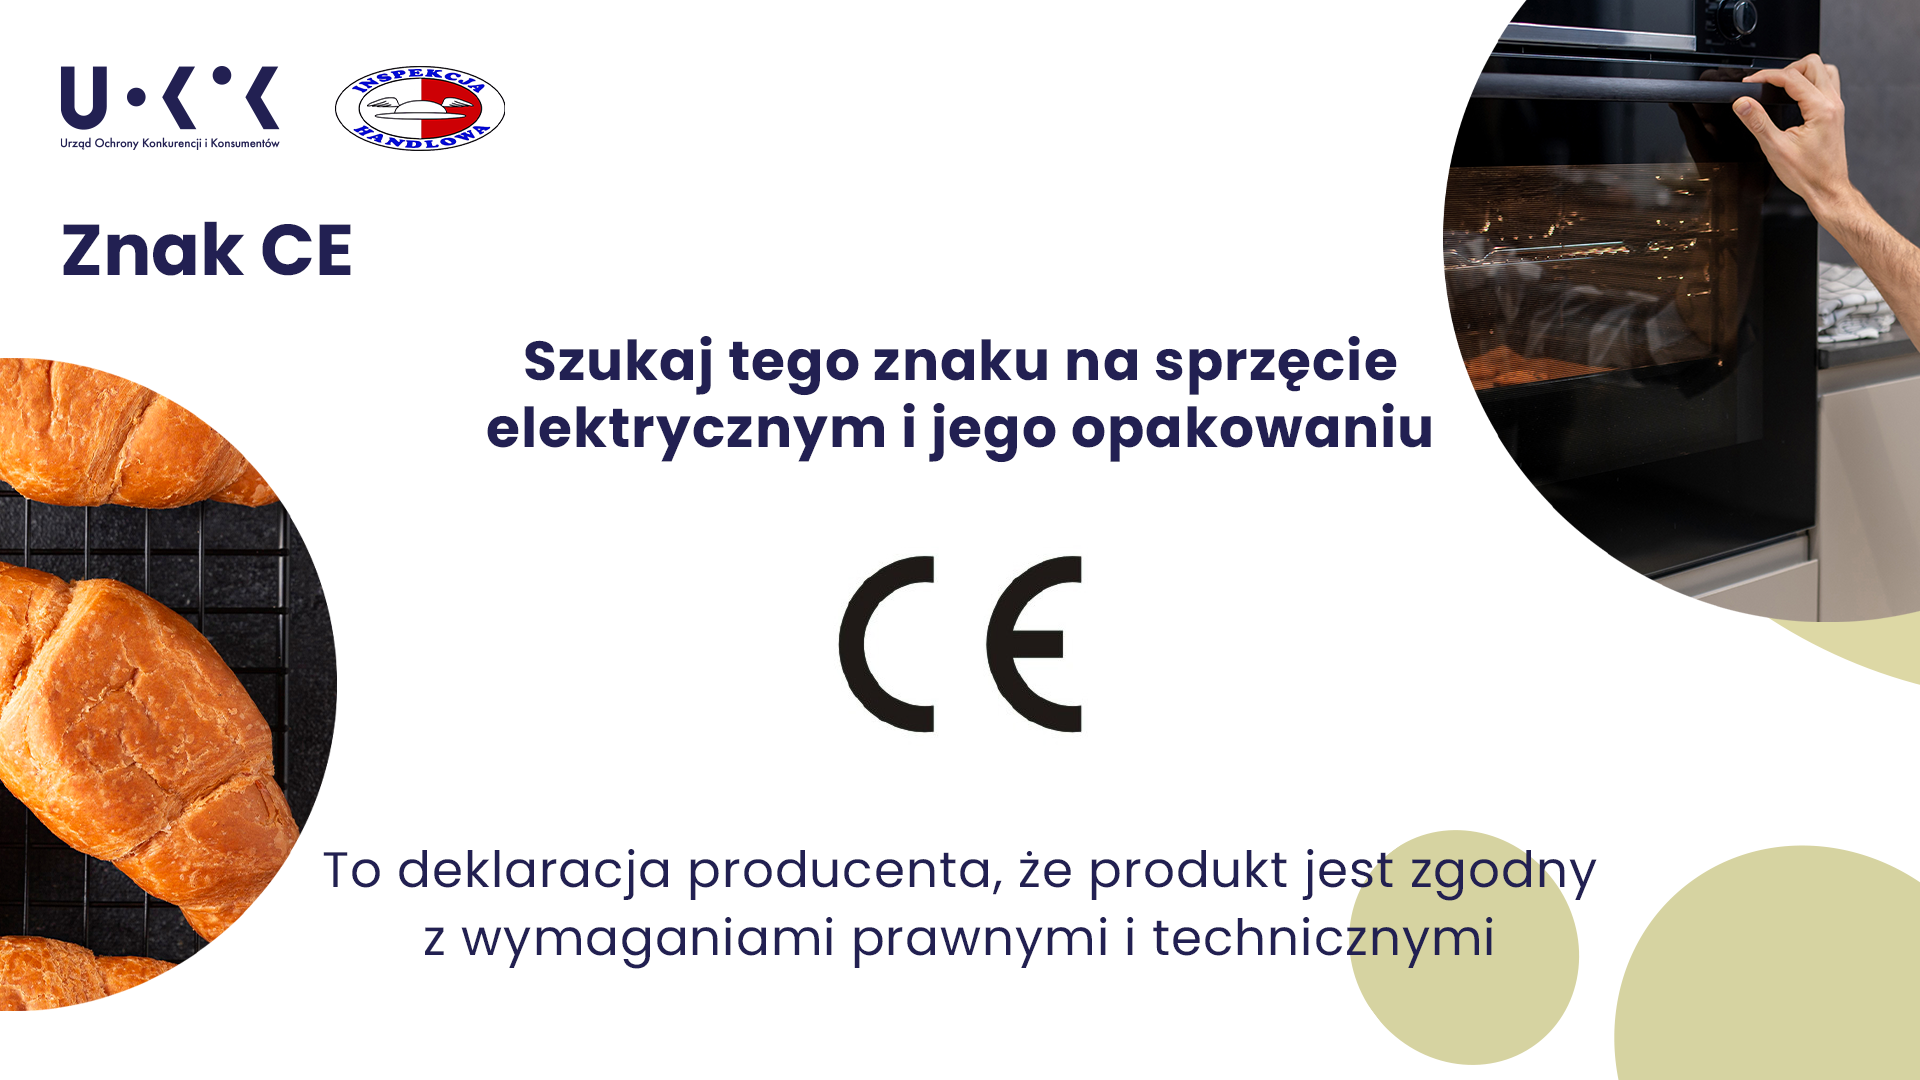 Grafika przedstawia w lewym górnym rogu loga UOKiK i Inspekcji Handlowej, po prawej zdjęcie osoby trzymającej uchwyt do otwierania piekarnika, a po lewej zdjęcie rogalików. Na środku znajduje się tekst: Znak CE. Szukaj tego znaku na sprzęcie elektrycznym i jego opakowaniu CE. To deklaracja producenta, że produkt jest zgodny z wymaganiami prawnymi i technicznymi.